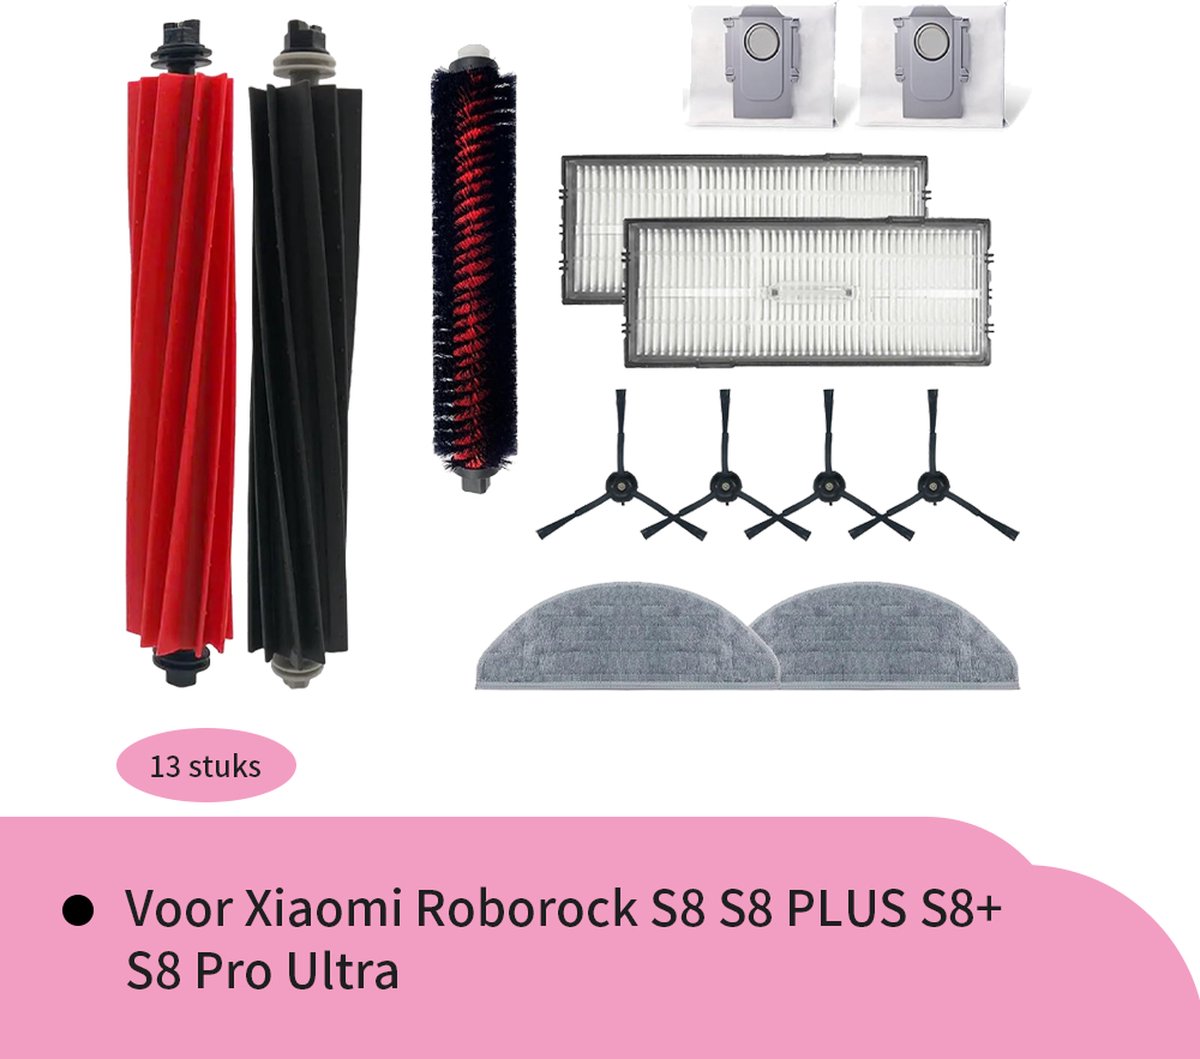 Pour Roborock S8 / S8 + / S8 Pro Ultra Pièces de rechange